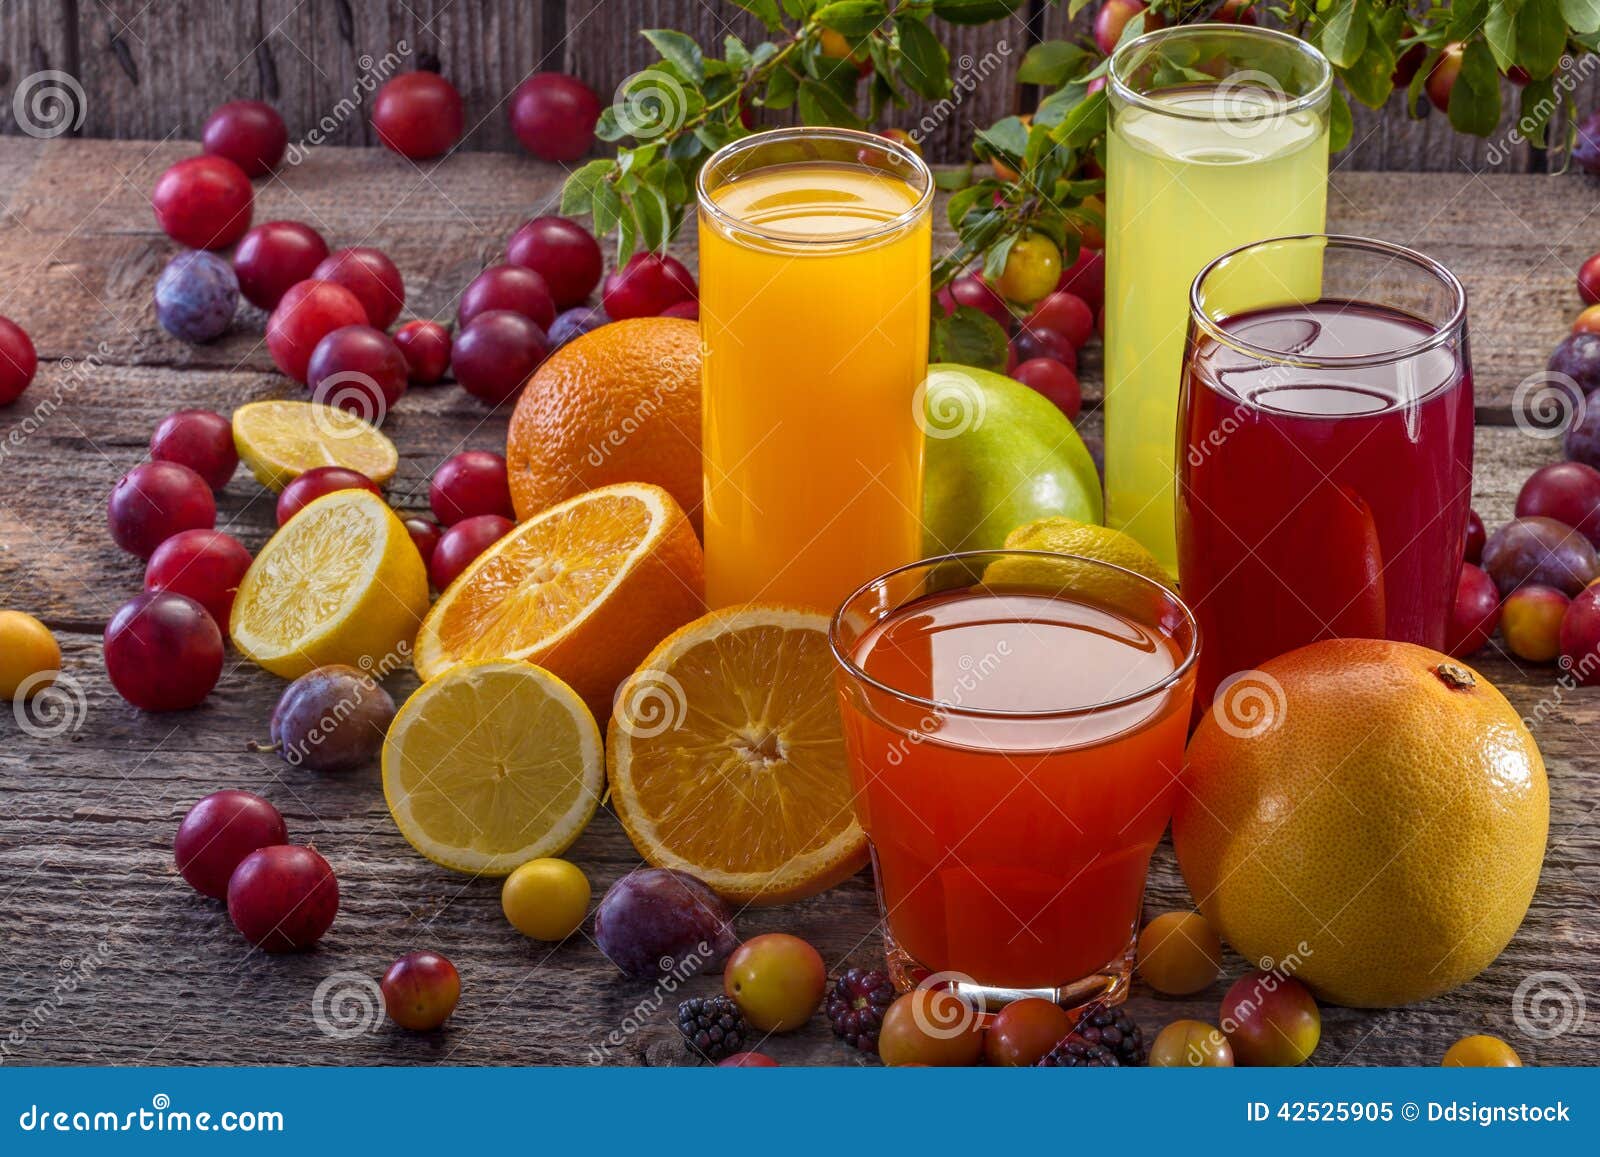 antioxidant juices